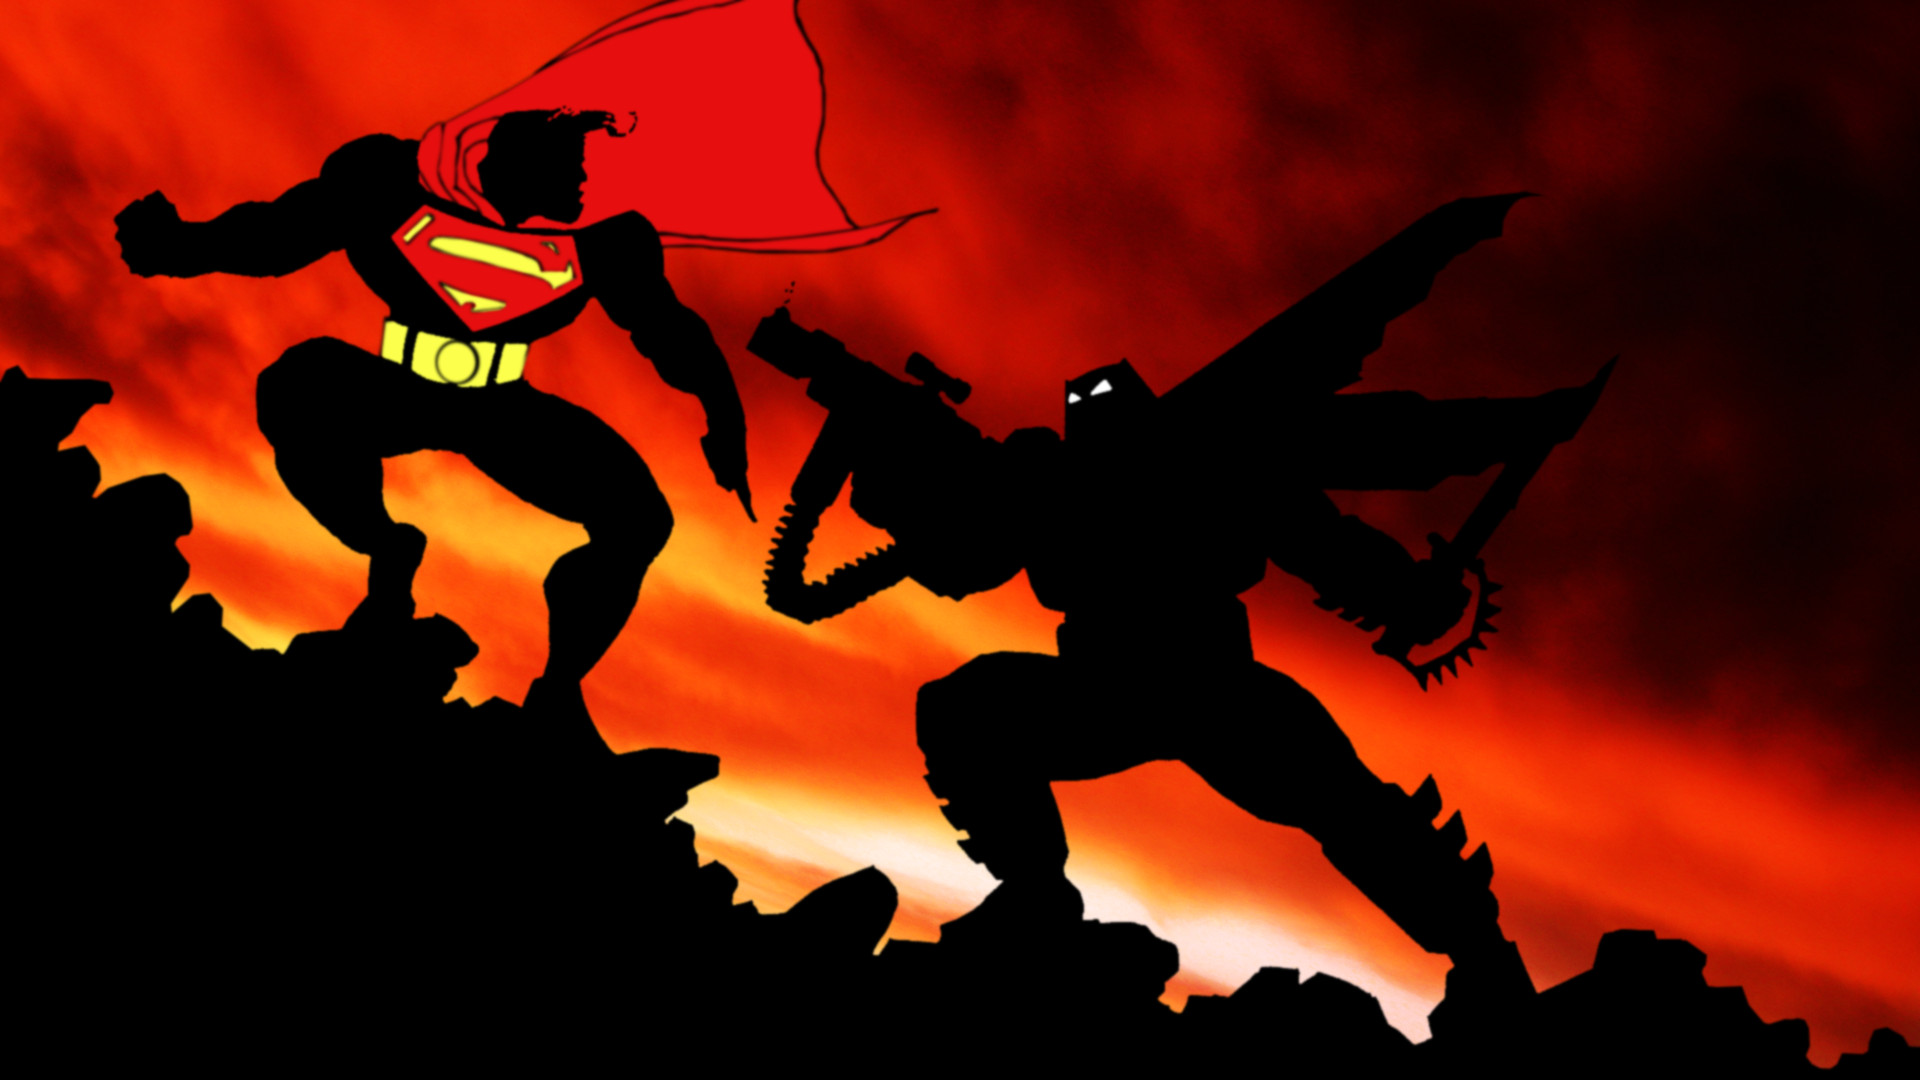 the dark knight returns, batman: the dark knight returns, comics, batman, superman